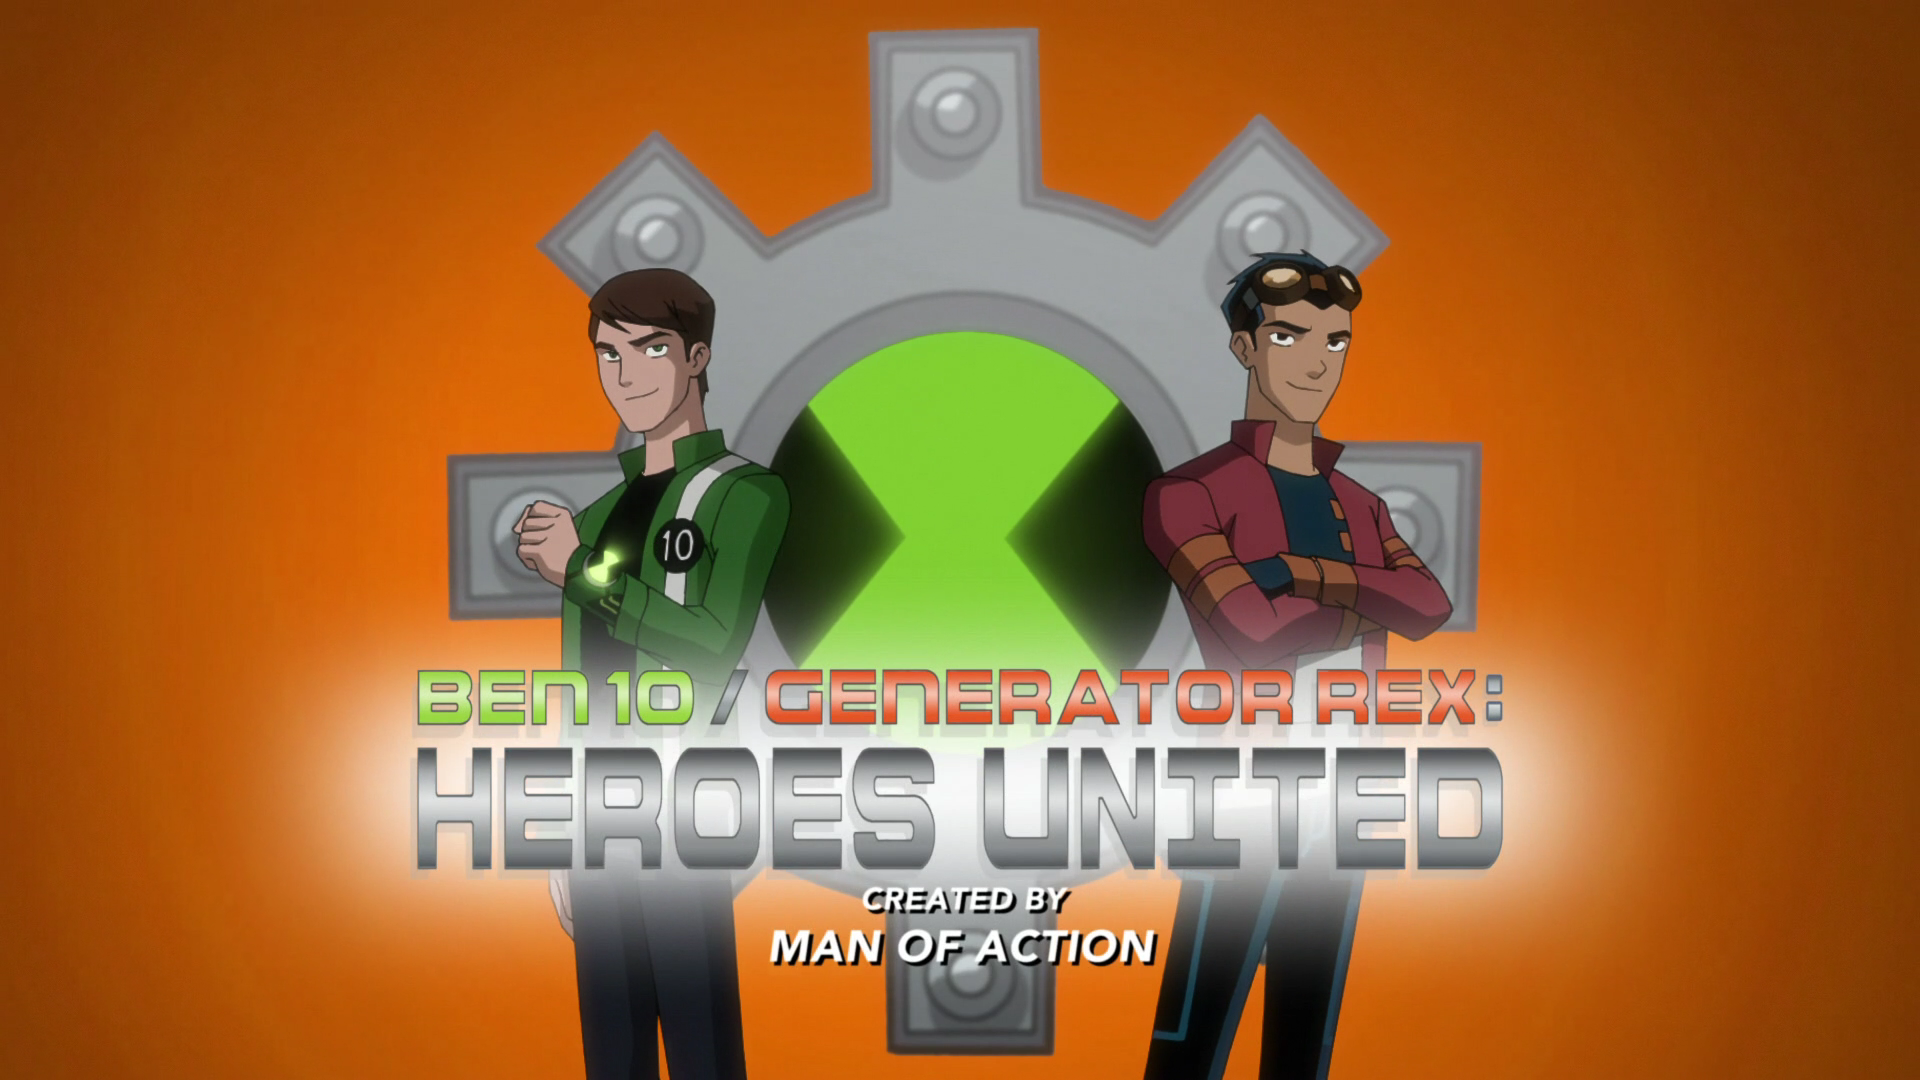 Ben 10/Generator Rex: Heroes United Picture